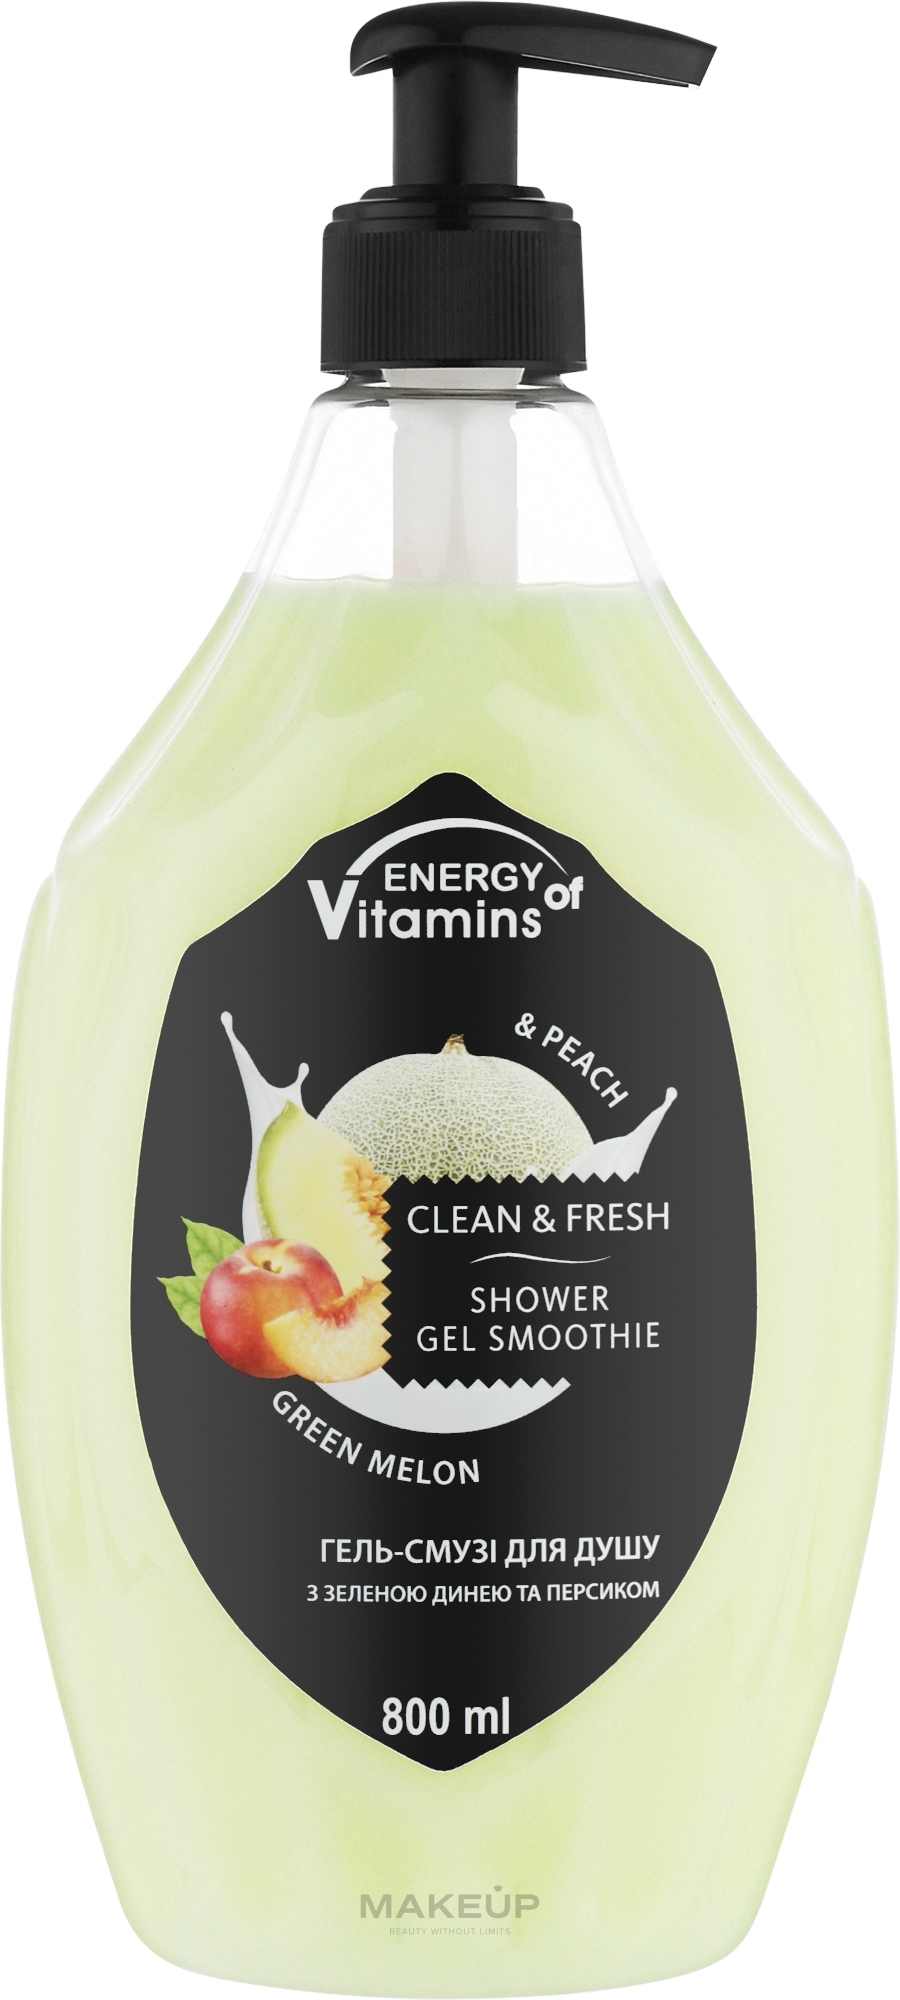 Гель-смузи для душа "Green Melon & Peach" - Energy of Vitamins Clean&Fresh Shower Gel Smoothie — фото 800ml